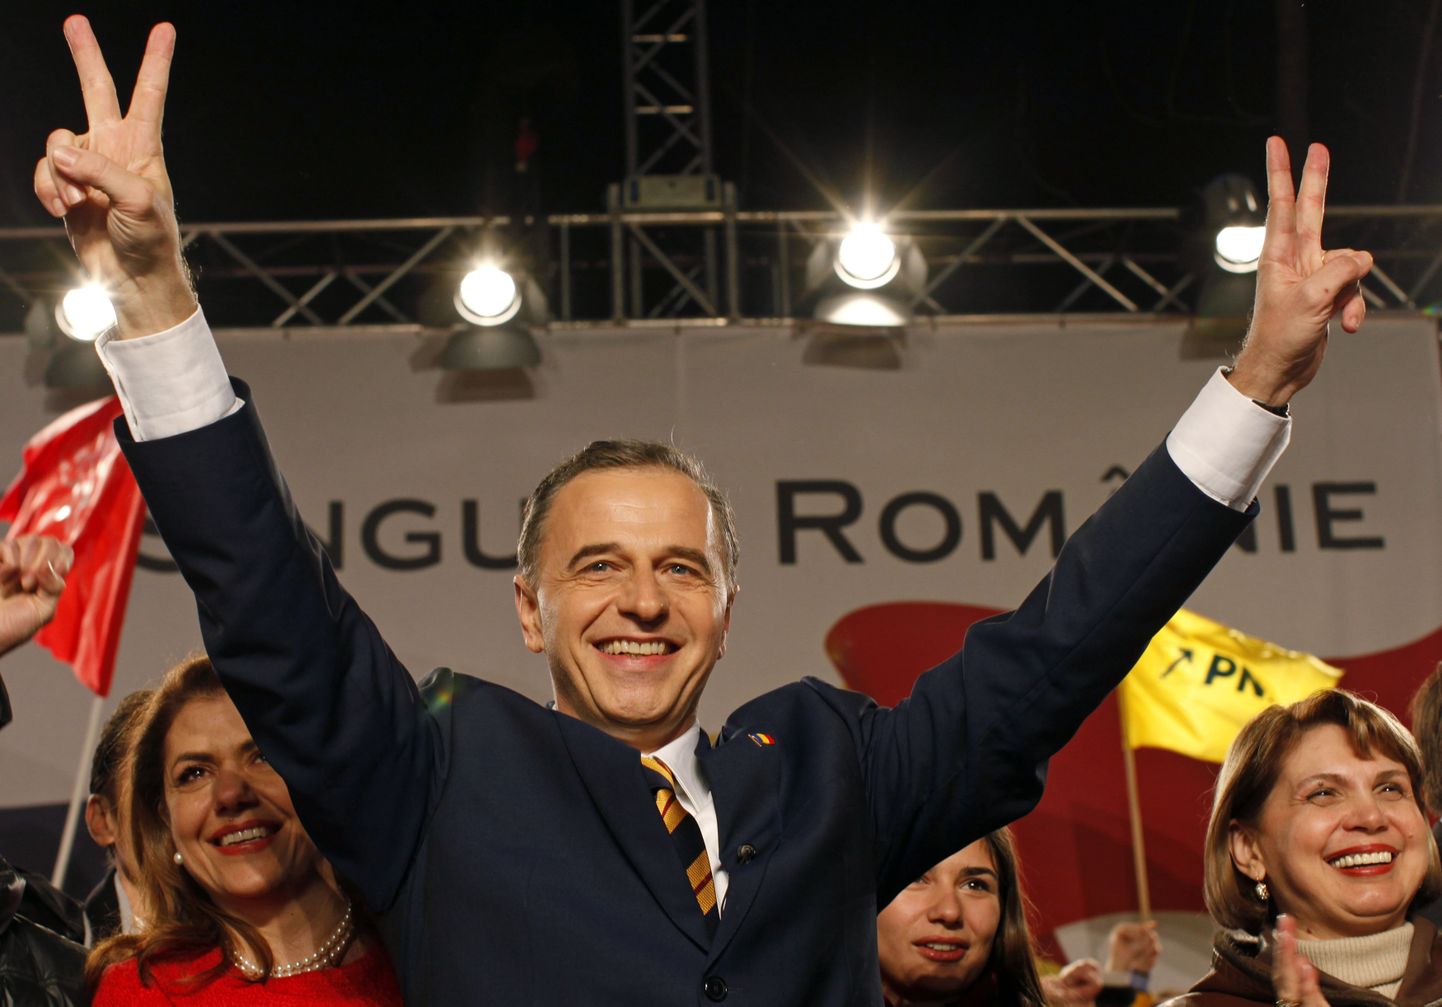 Mircea Geoană kandideeris 2009. aastal Rumeenia presidendiks, aga kaotas siis teises ringis Traian Basescule.